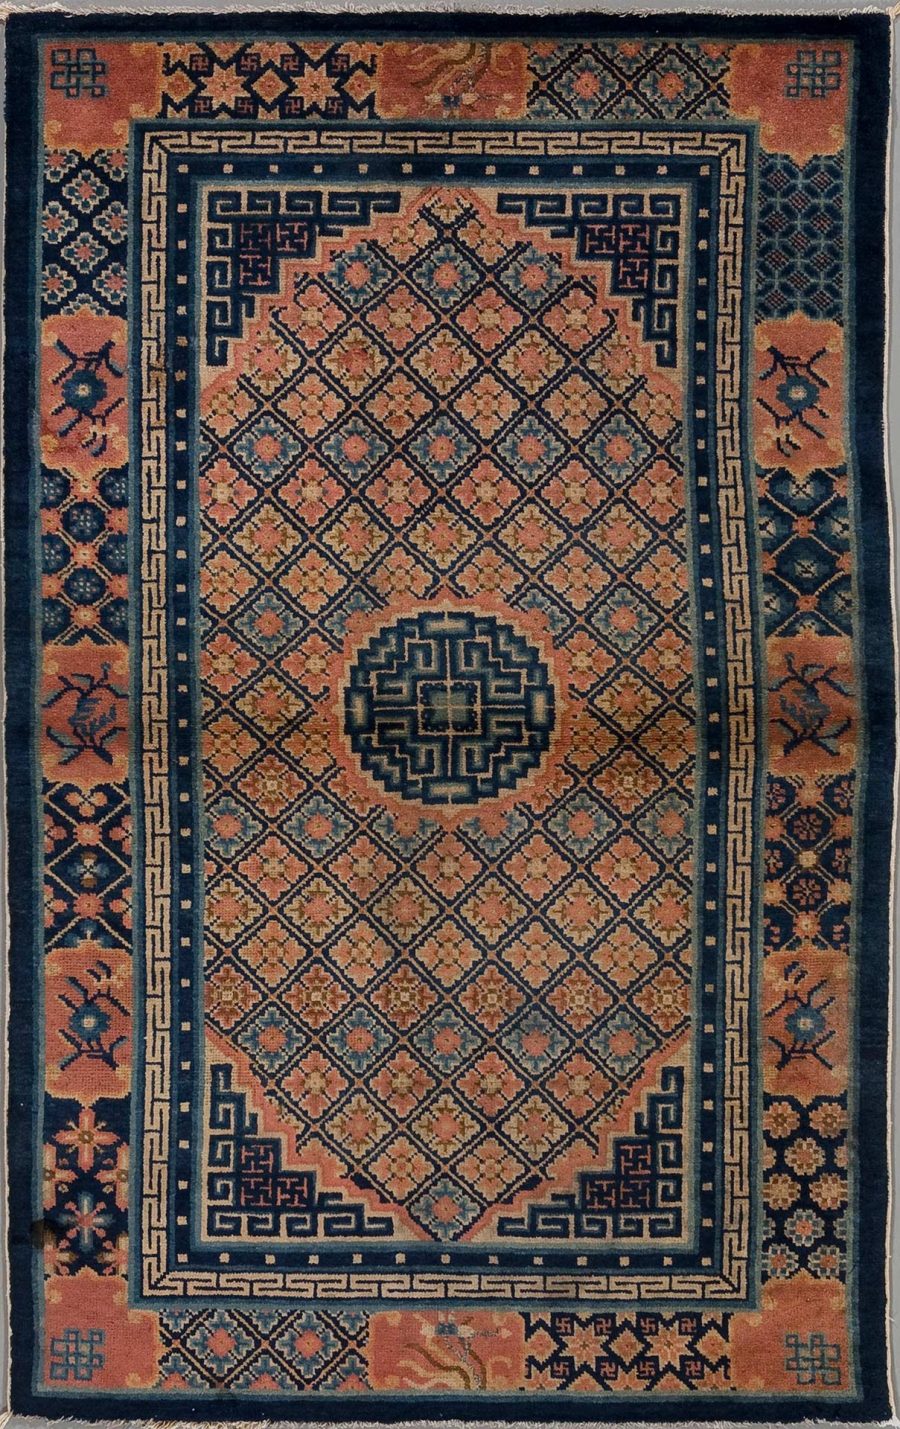 Antiker orientalischer Teppich mit komplizierten Mustern in Blau, Schwarz, Orange und Beige, zentrales Diamantenmuster und dekorative Bordüren.